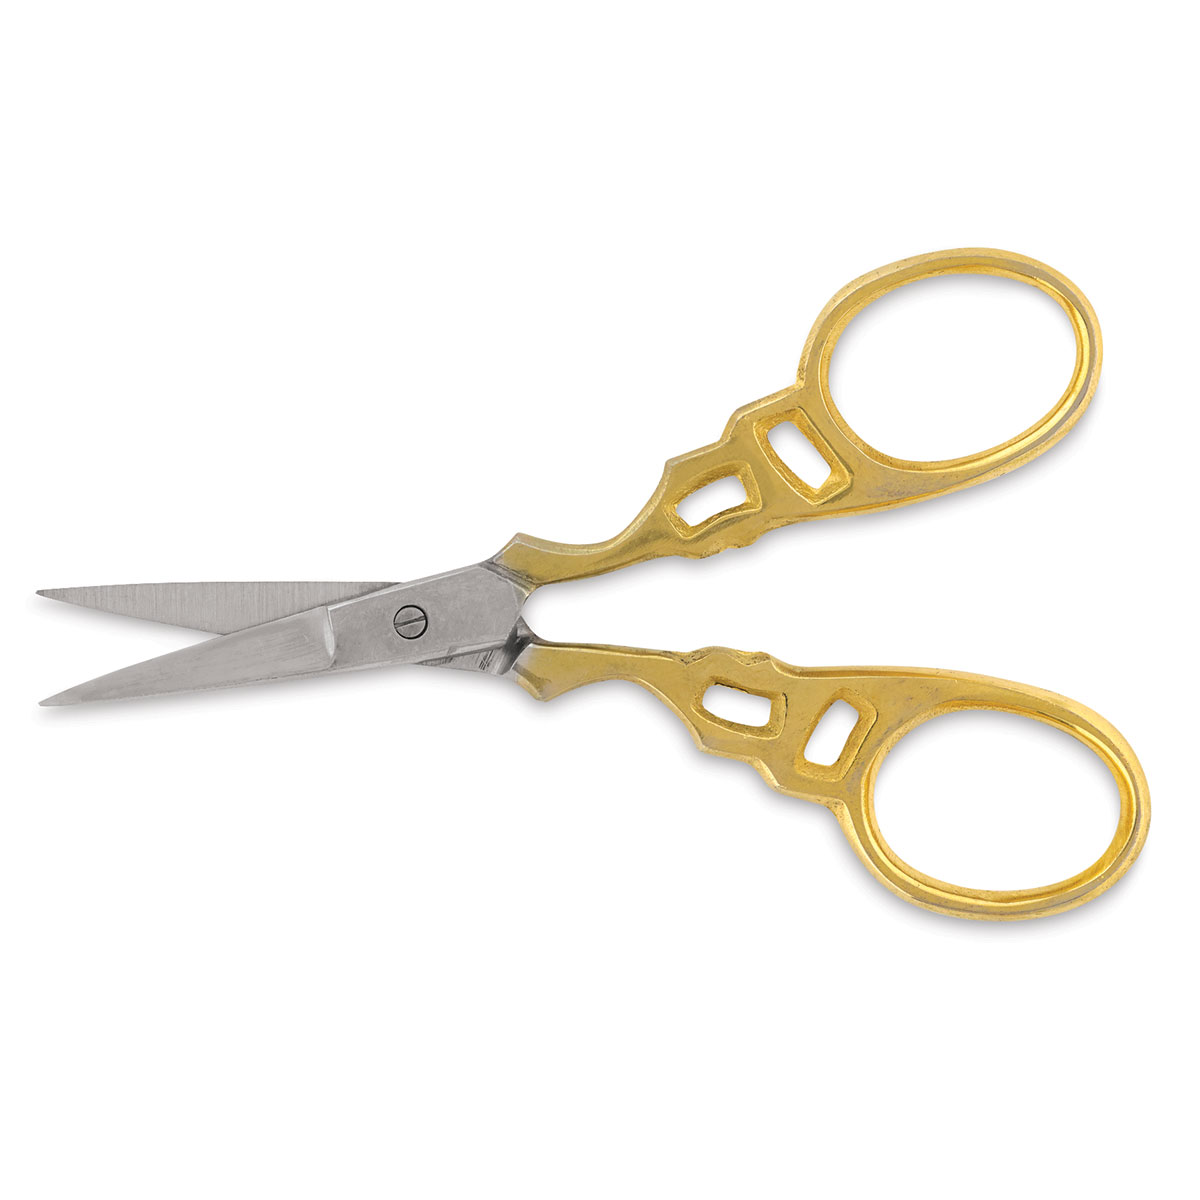 crimping scissors for fabric